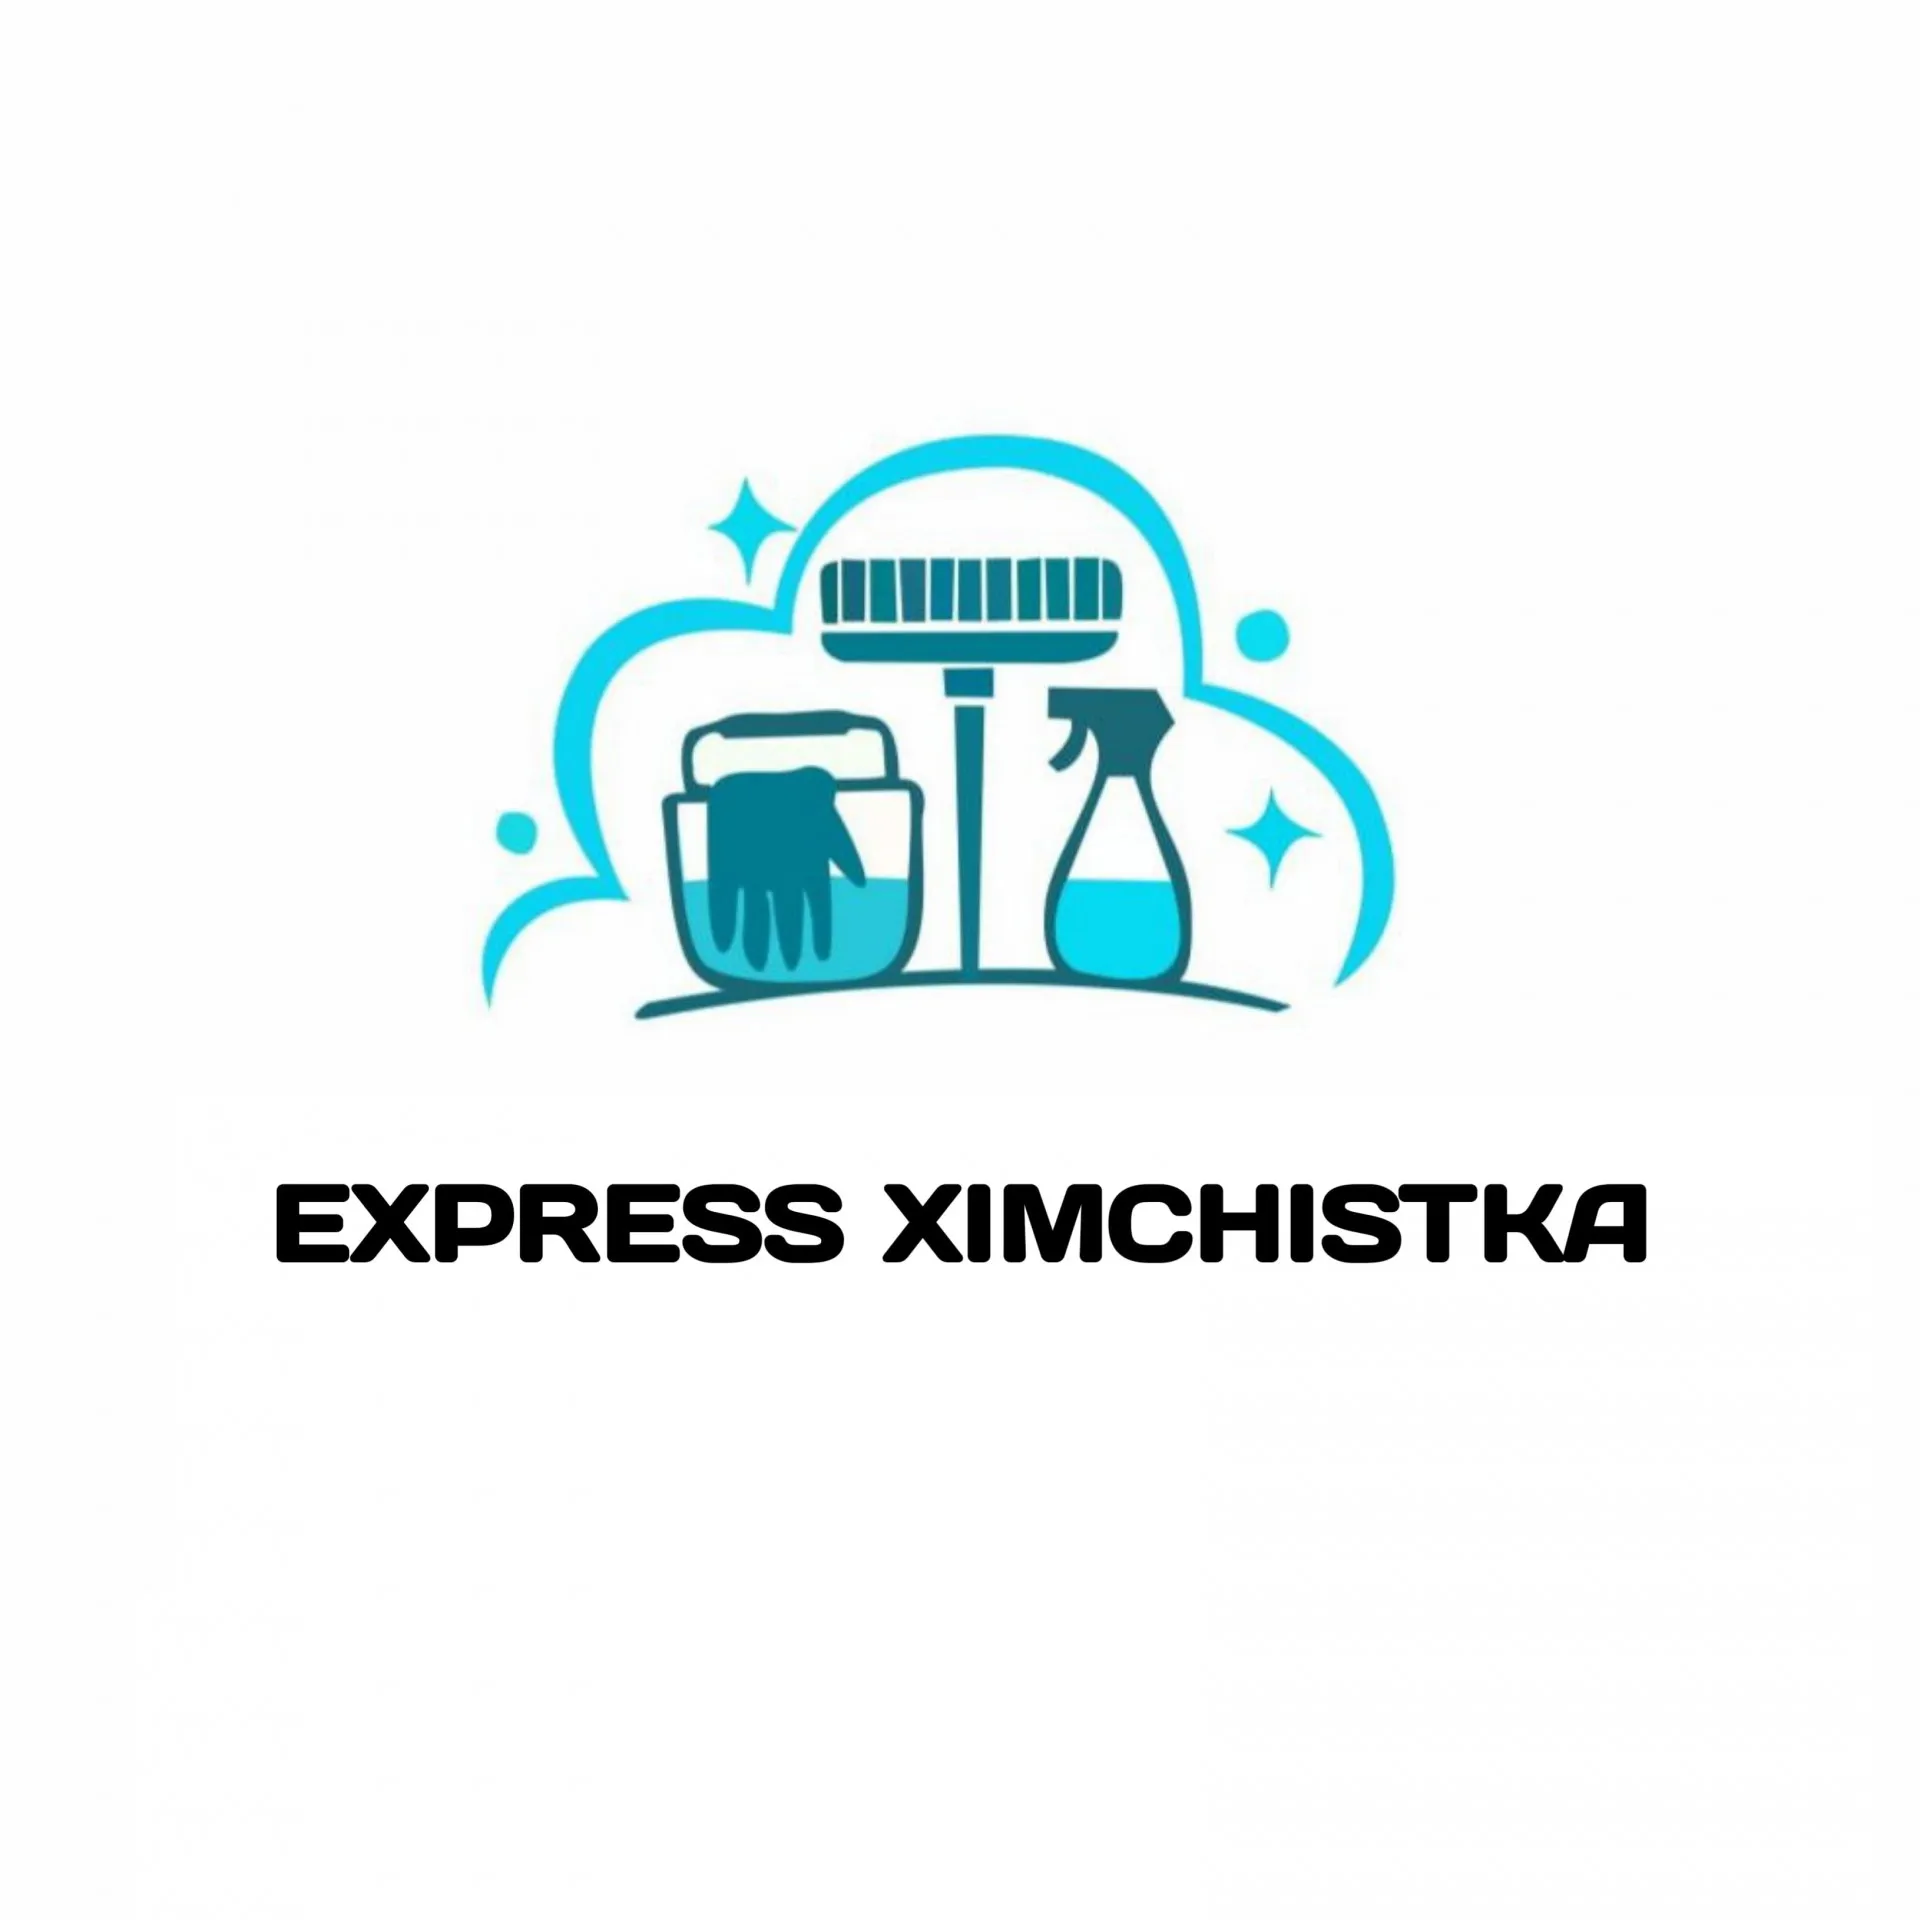 Express Ximchistka#1